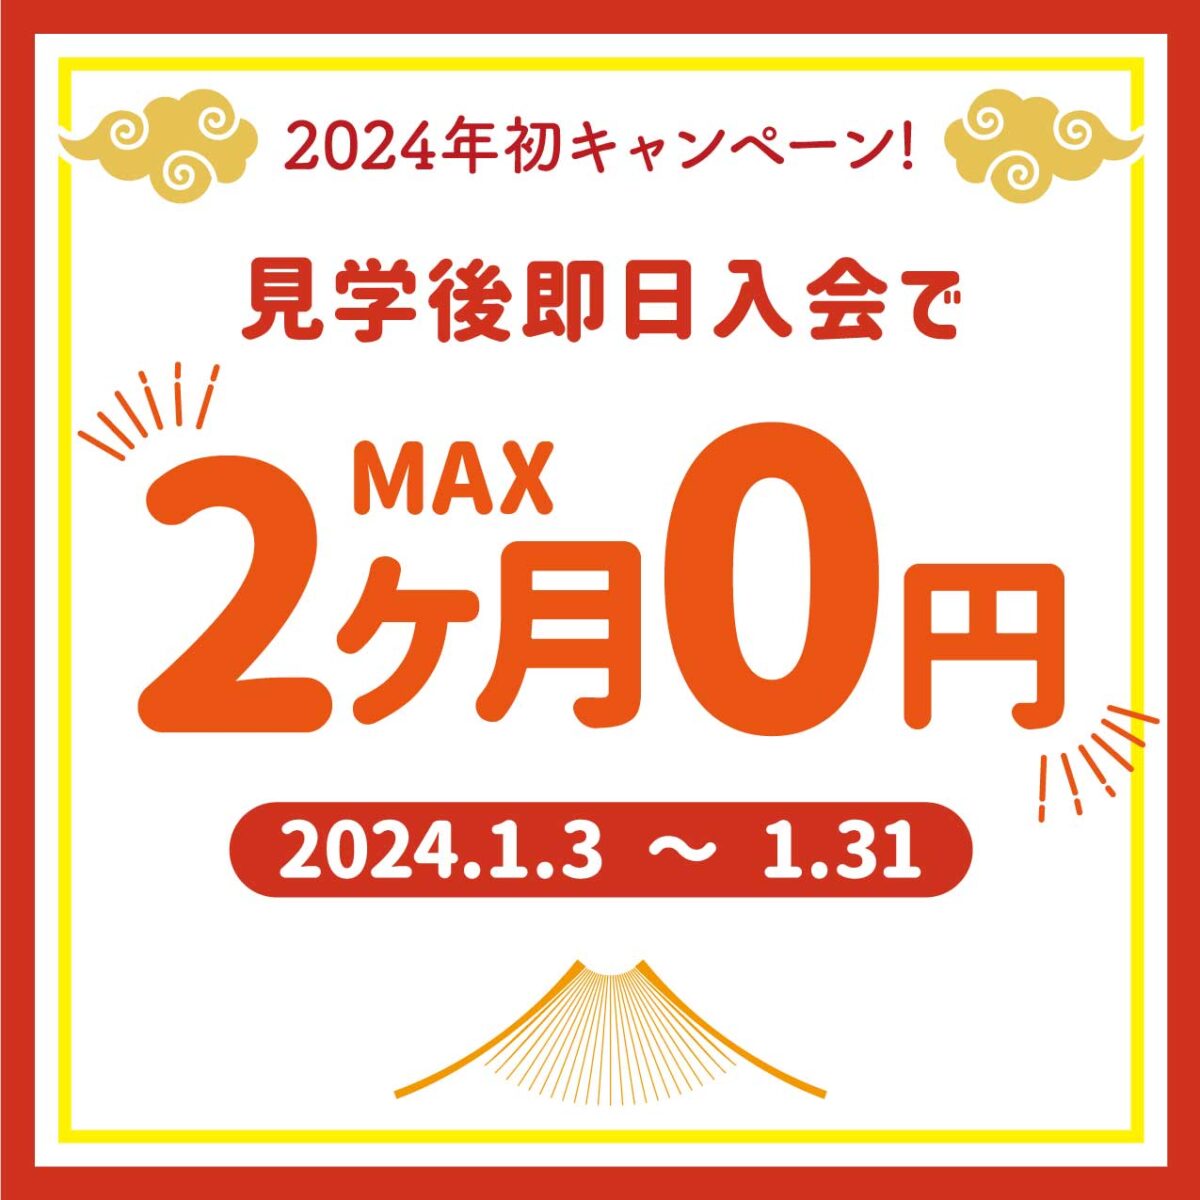 ご入会でMAX2ヶ月無料!!1月3日より受付スタート！